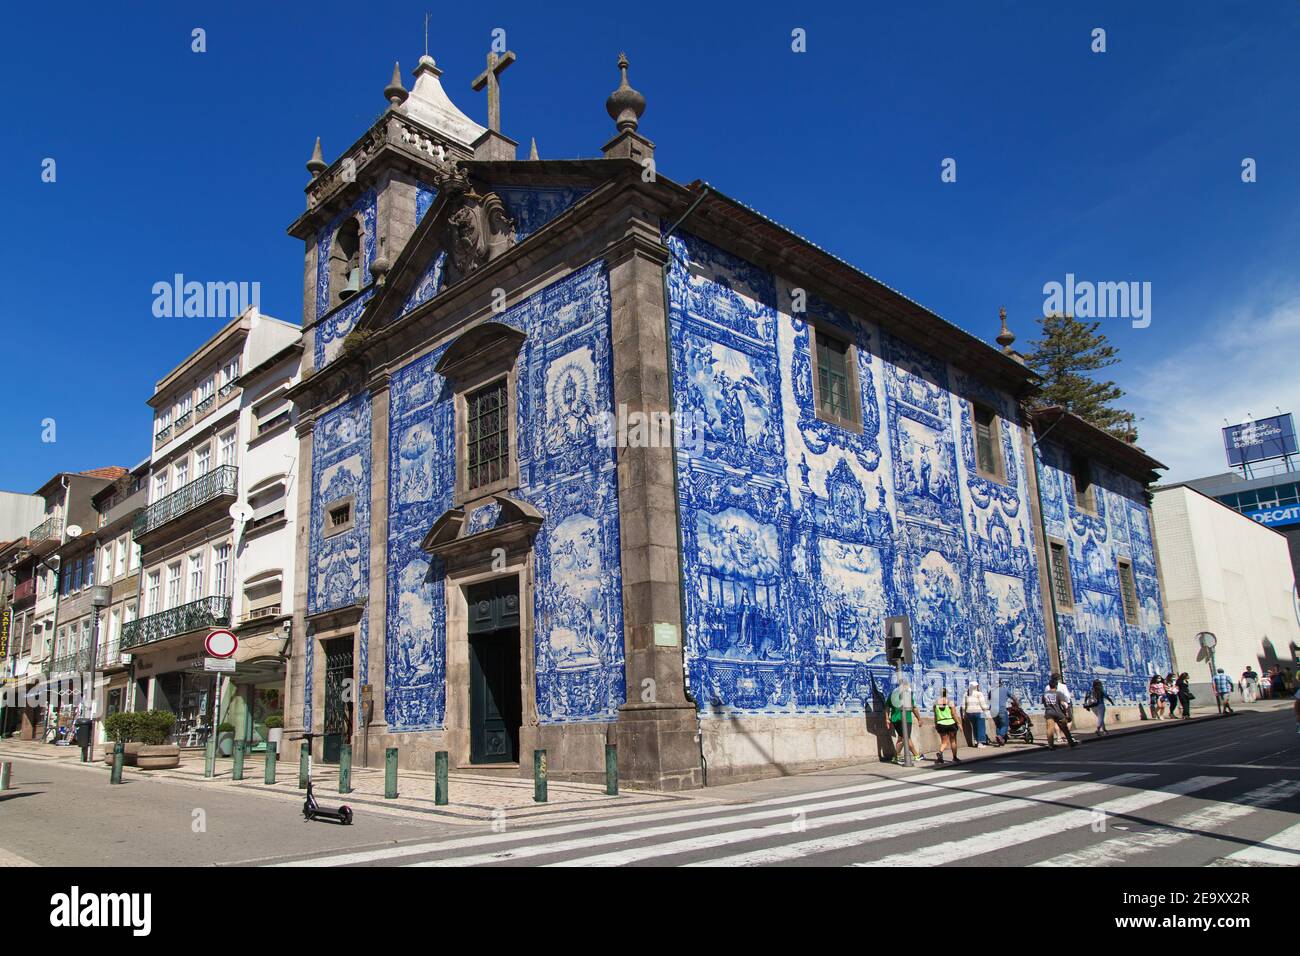 Porto, Portugal - August 24, 2020: Chapel of Souls in Porto, Portugal. Stock Photo